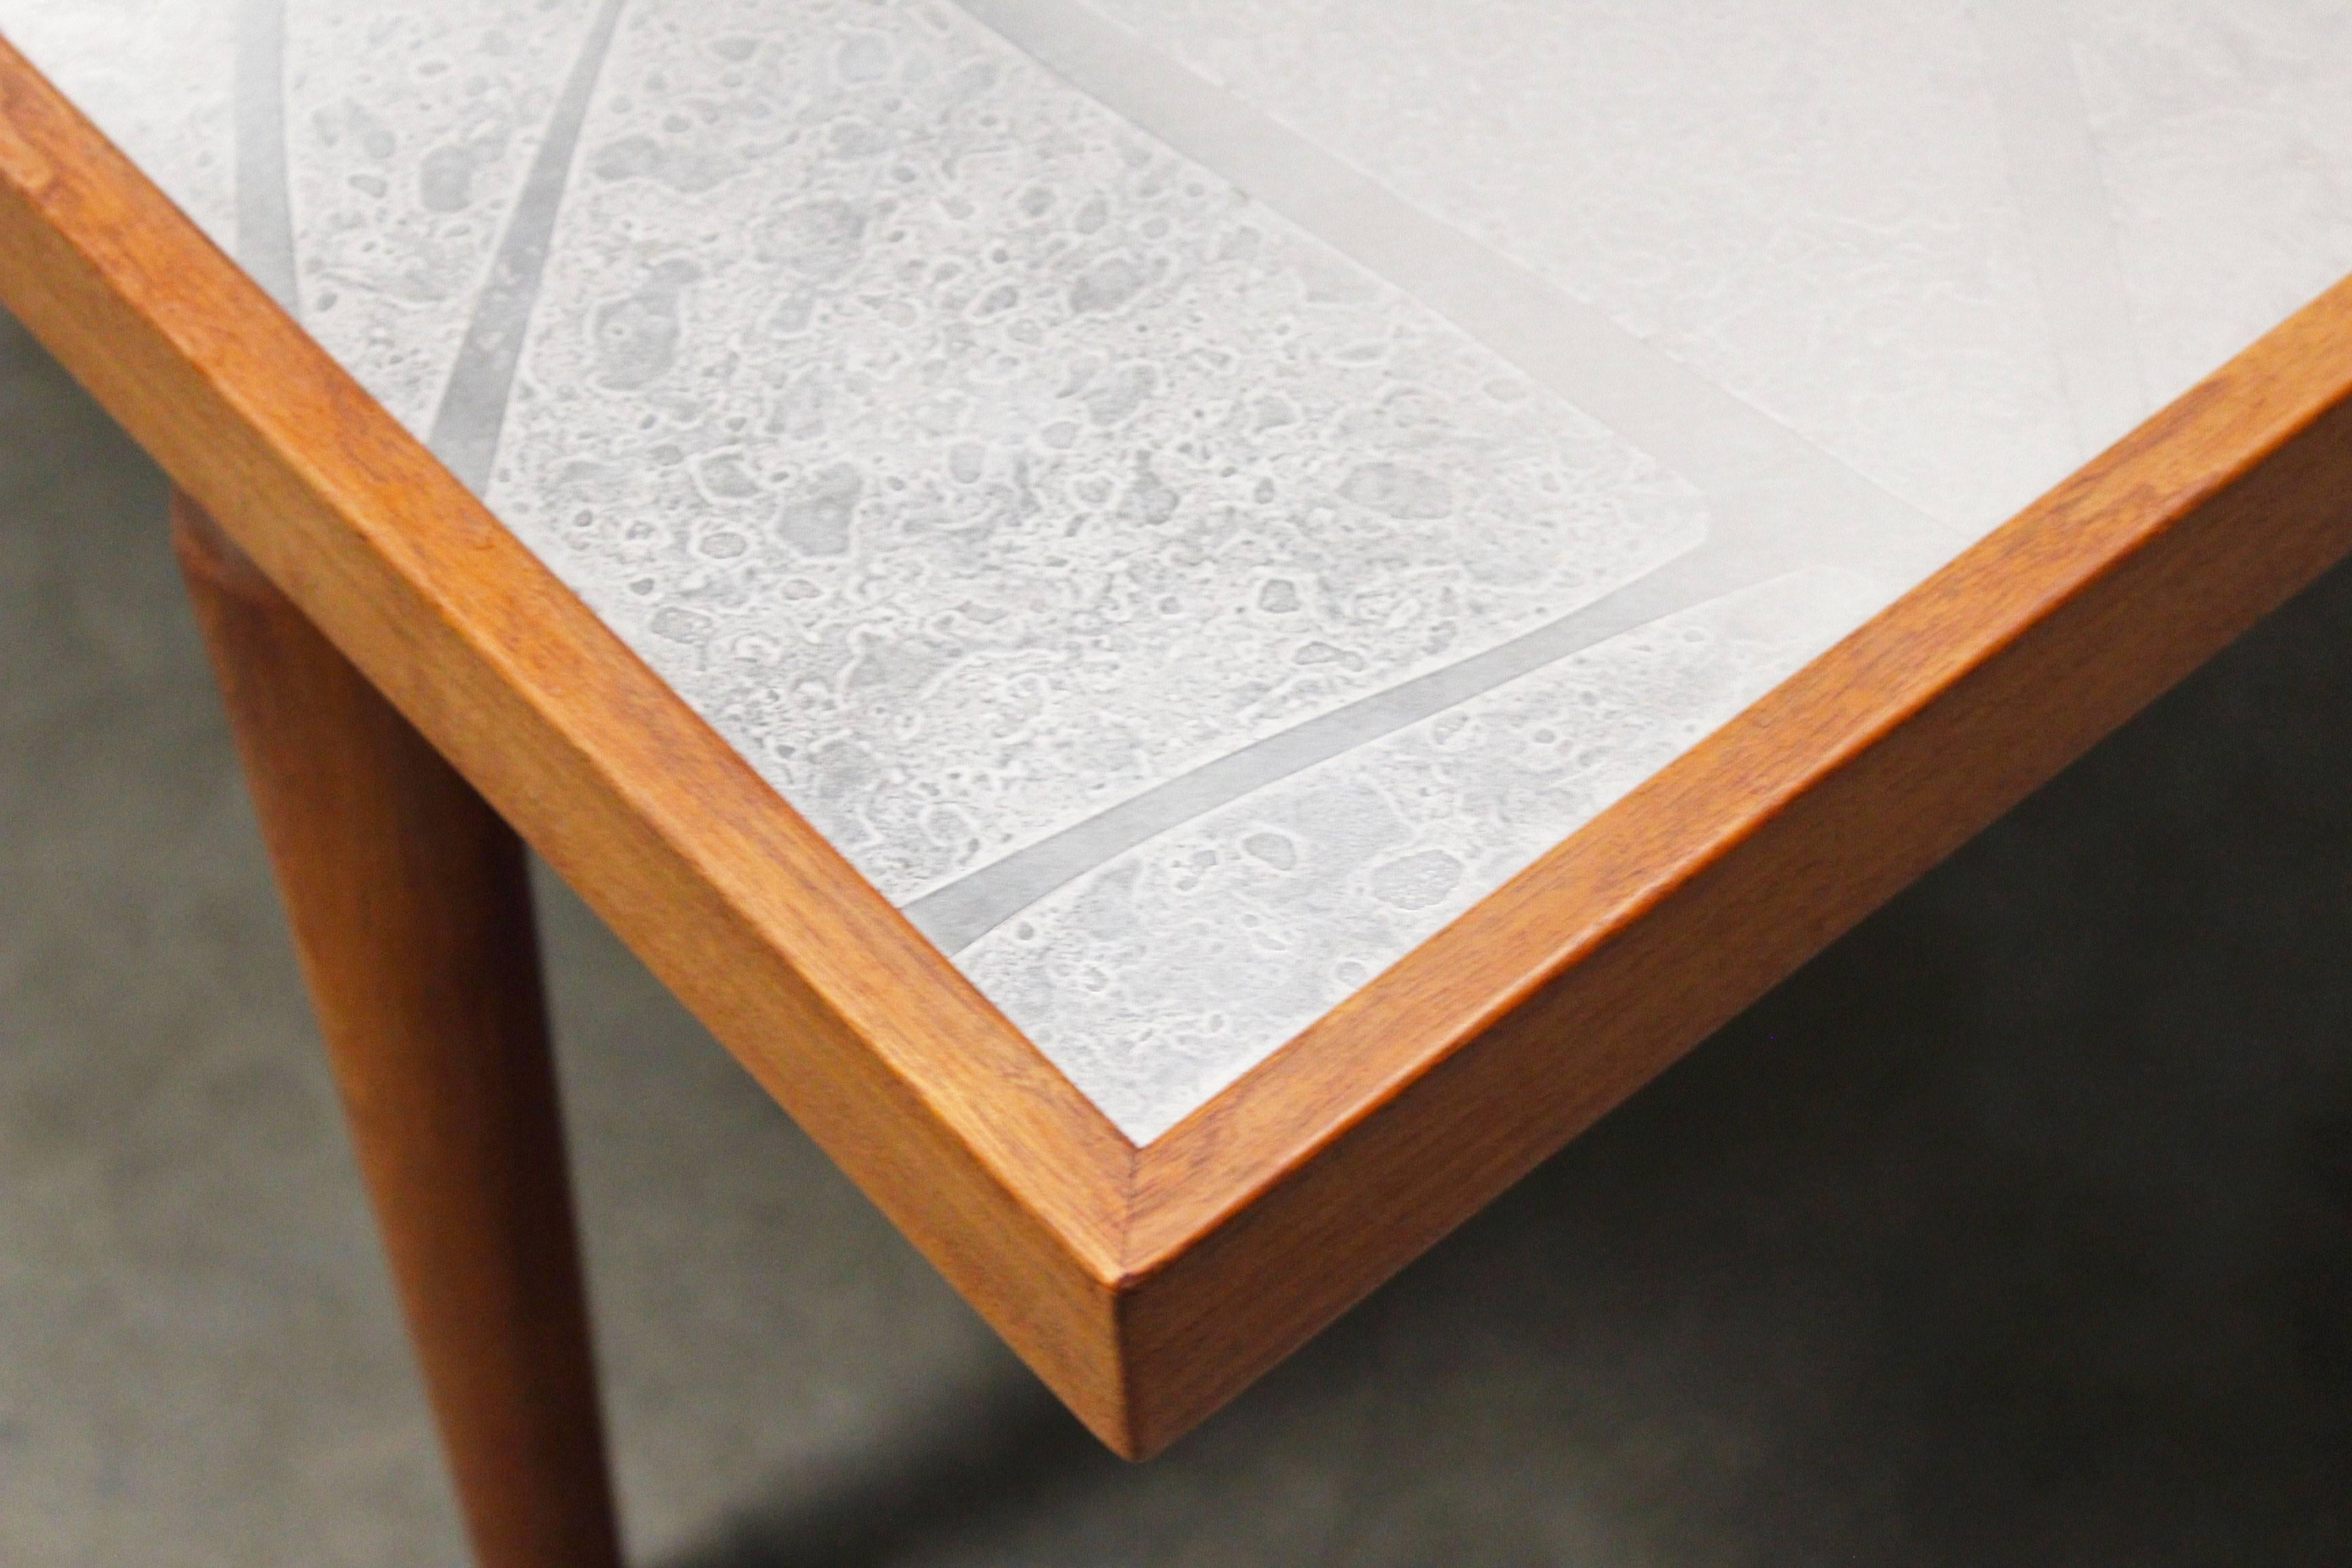 Cette table basse a été fabriquée et conçue par le designer allemand Heinz Lilienthal en 1970. Lilienthal était connu pour ses décorations murales faites de métal, de bois et de béton. Le plateau de cette table basse présente un motif réalisé par la